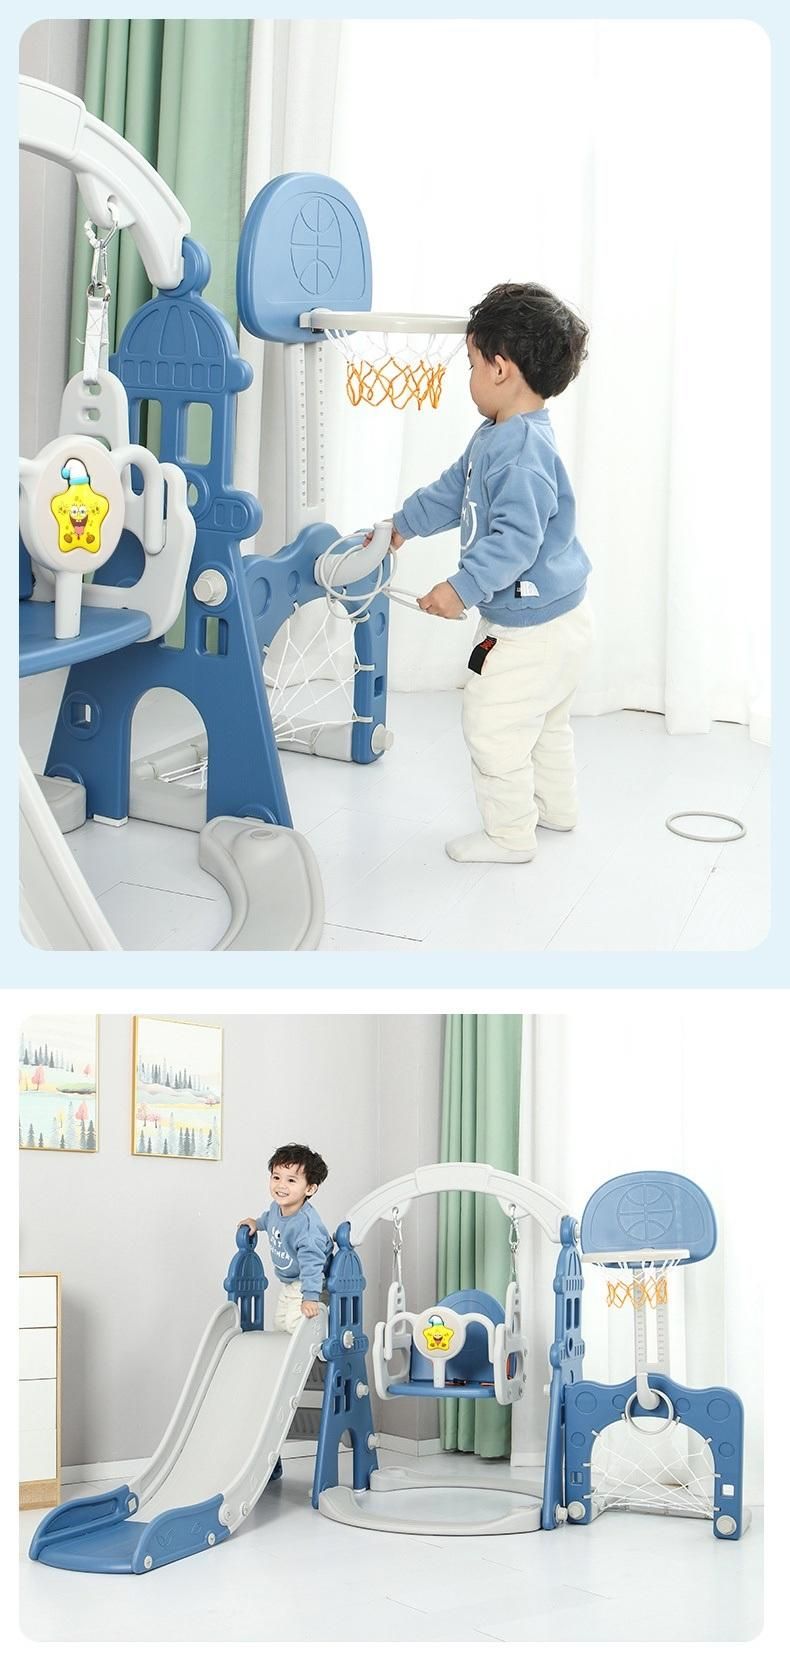 5 in 1 New Custom Kids Best Design Castle Slip and Children′ S Slide Indoor Toys Swing Slide for Kids